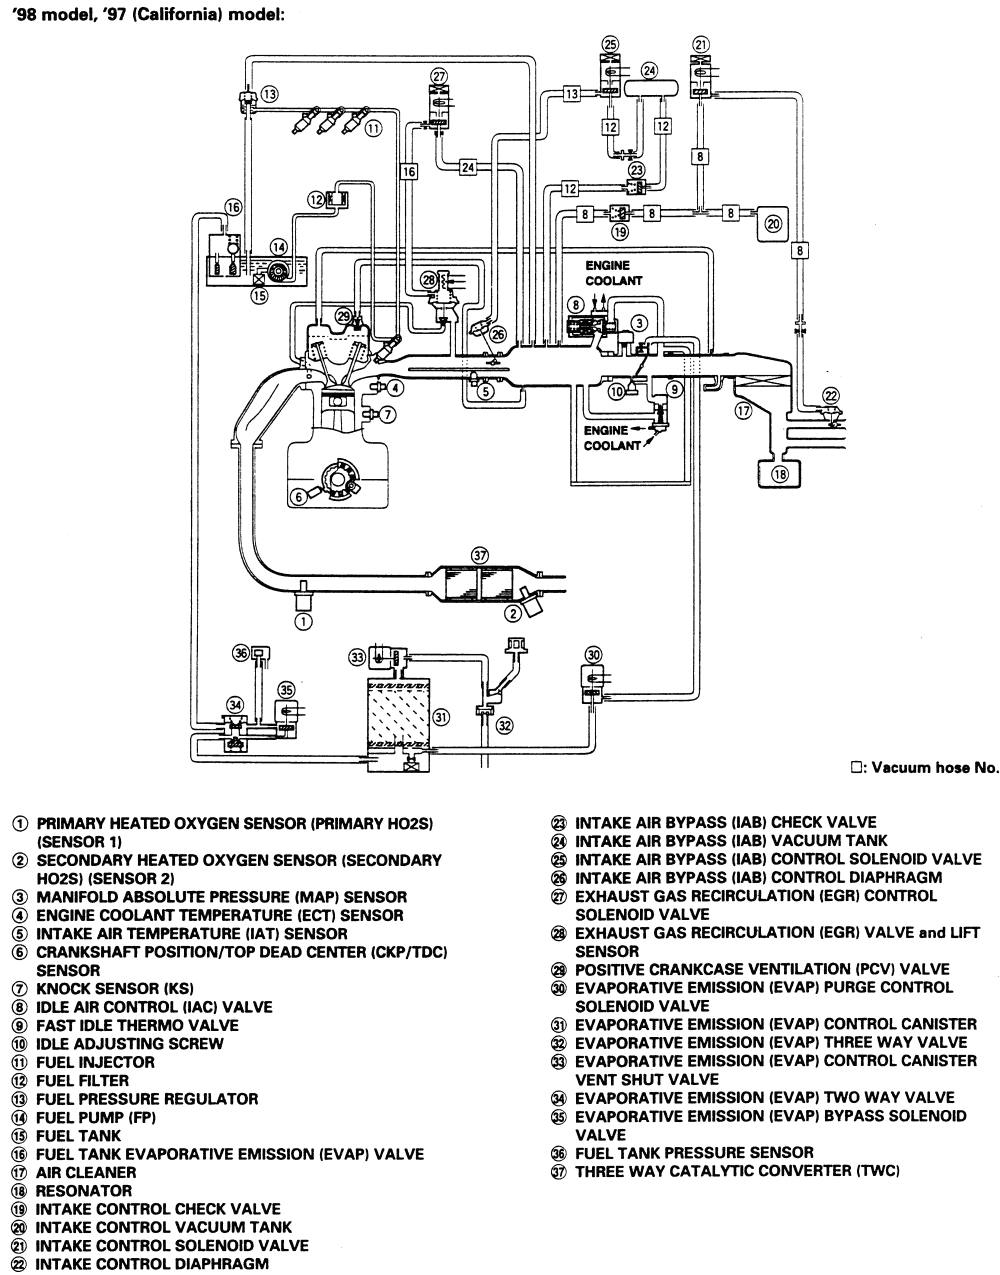 50cc Engine Vacuum Line Diagram - Wiring Diagram Networks